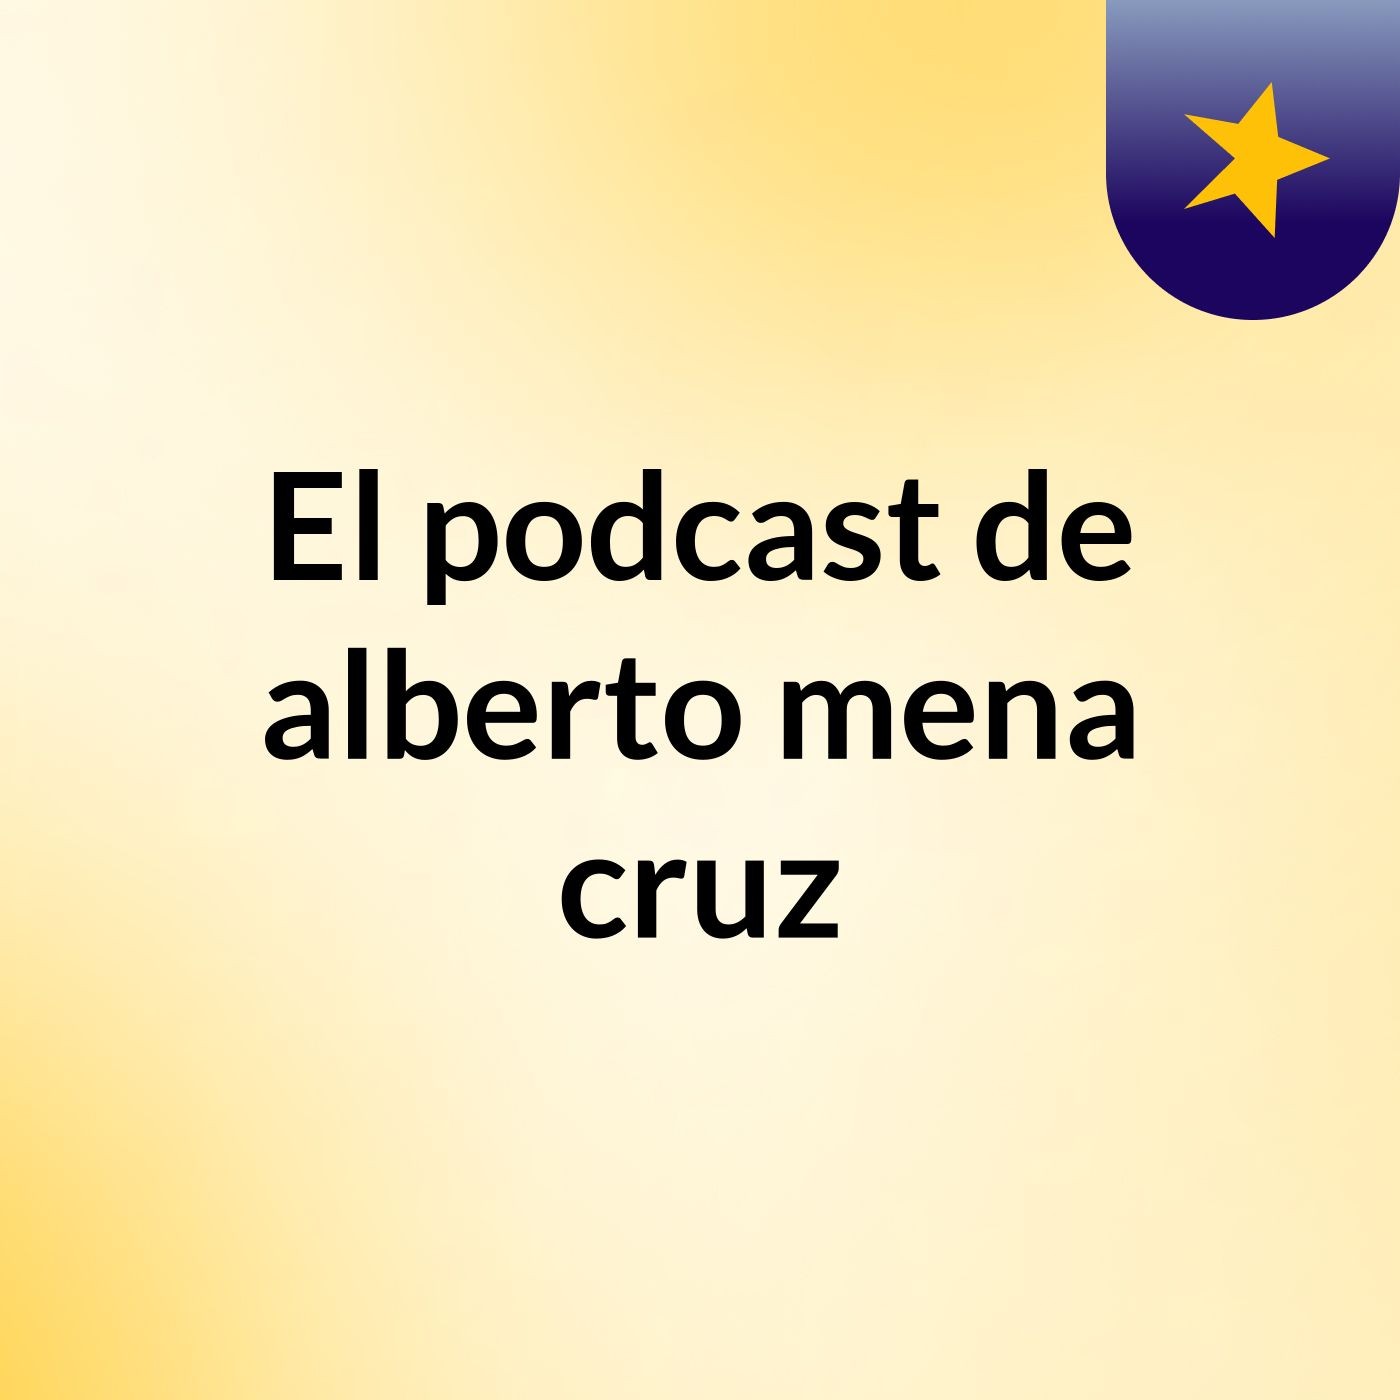 Episodio 2 - El podcast de alberto mena cruz